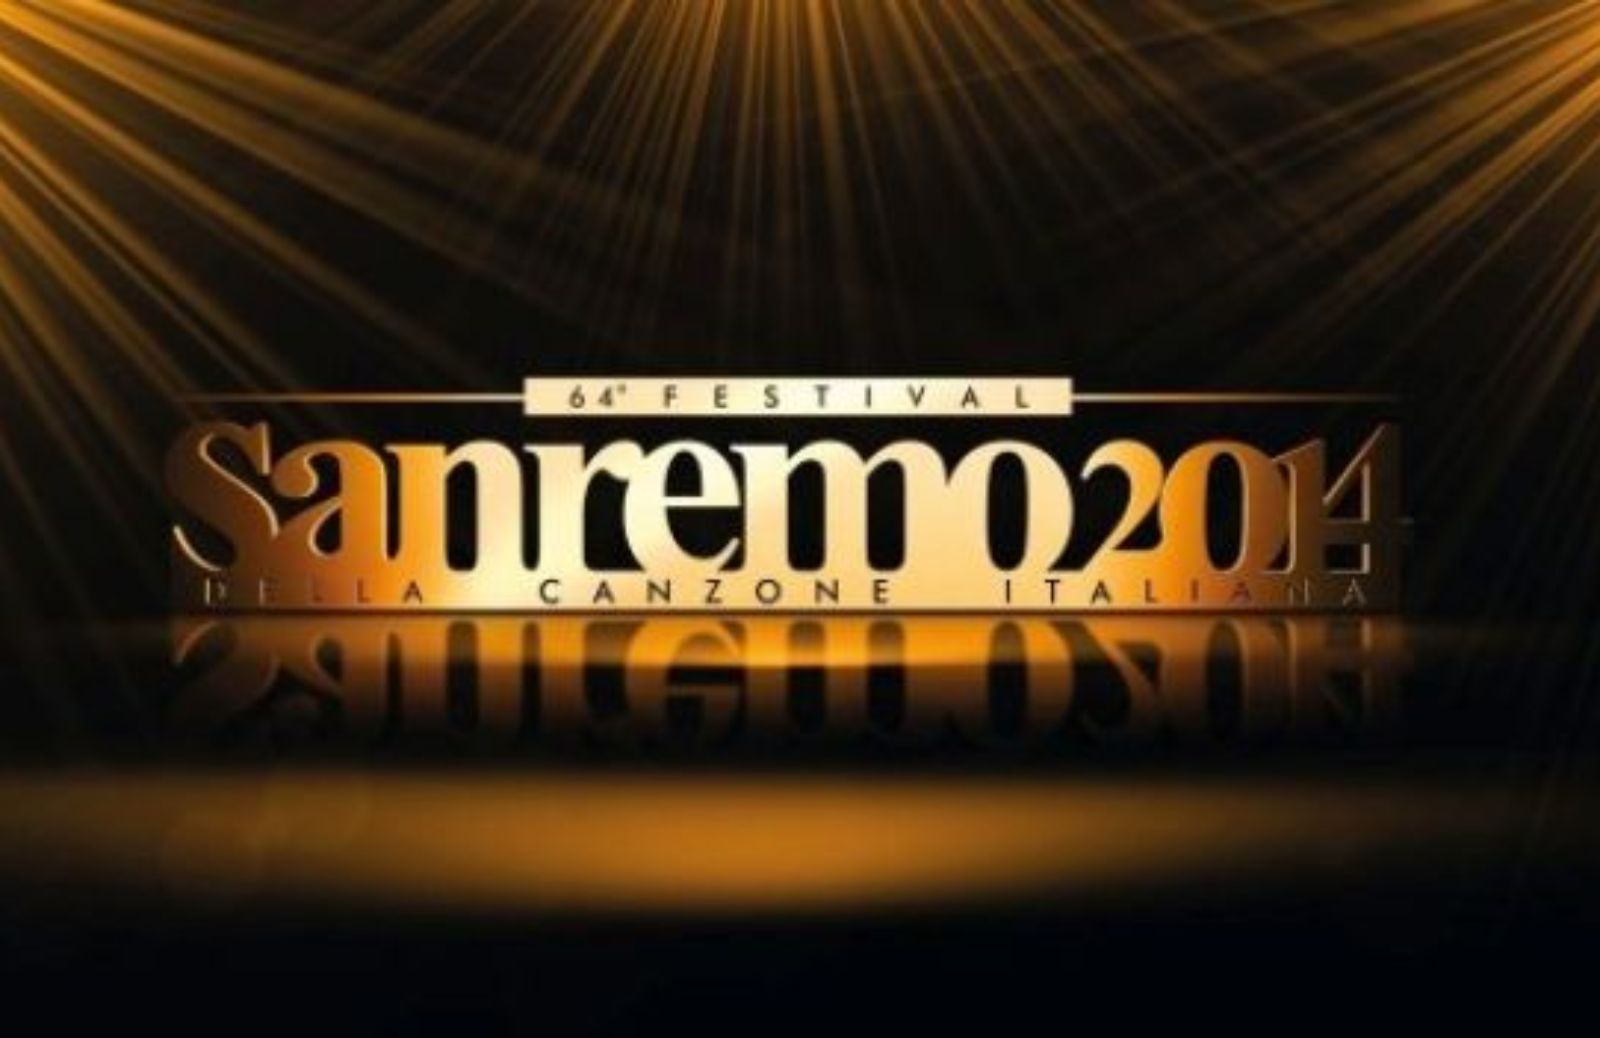 Festival di Sanremo 2014: la programmazione delle serate